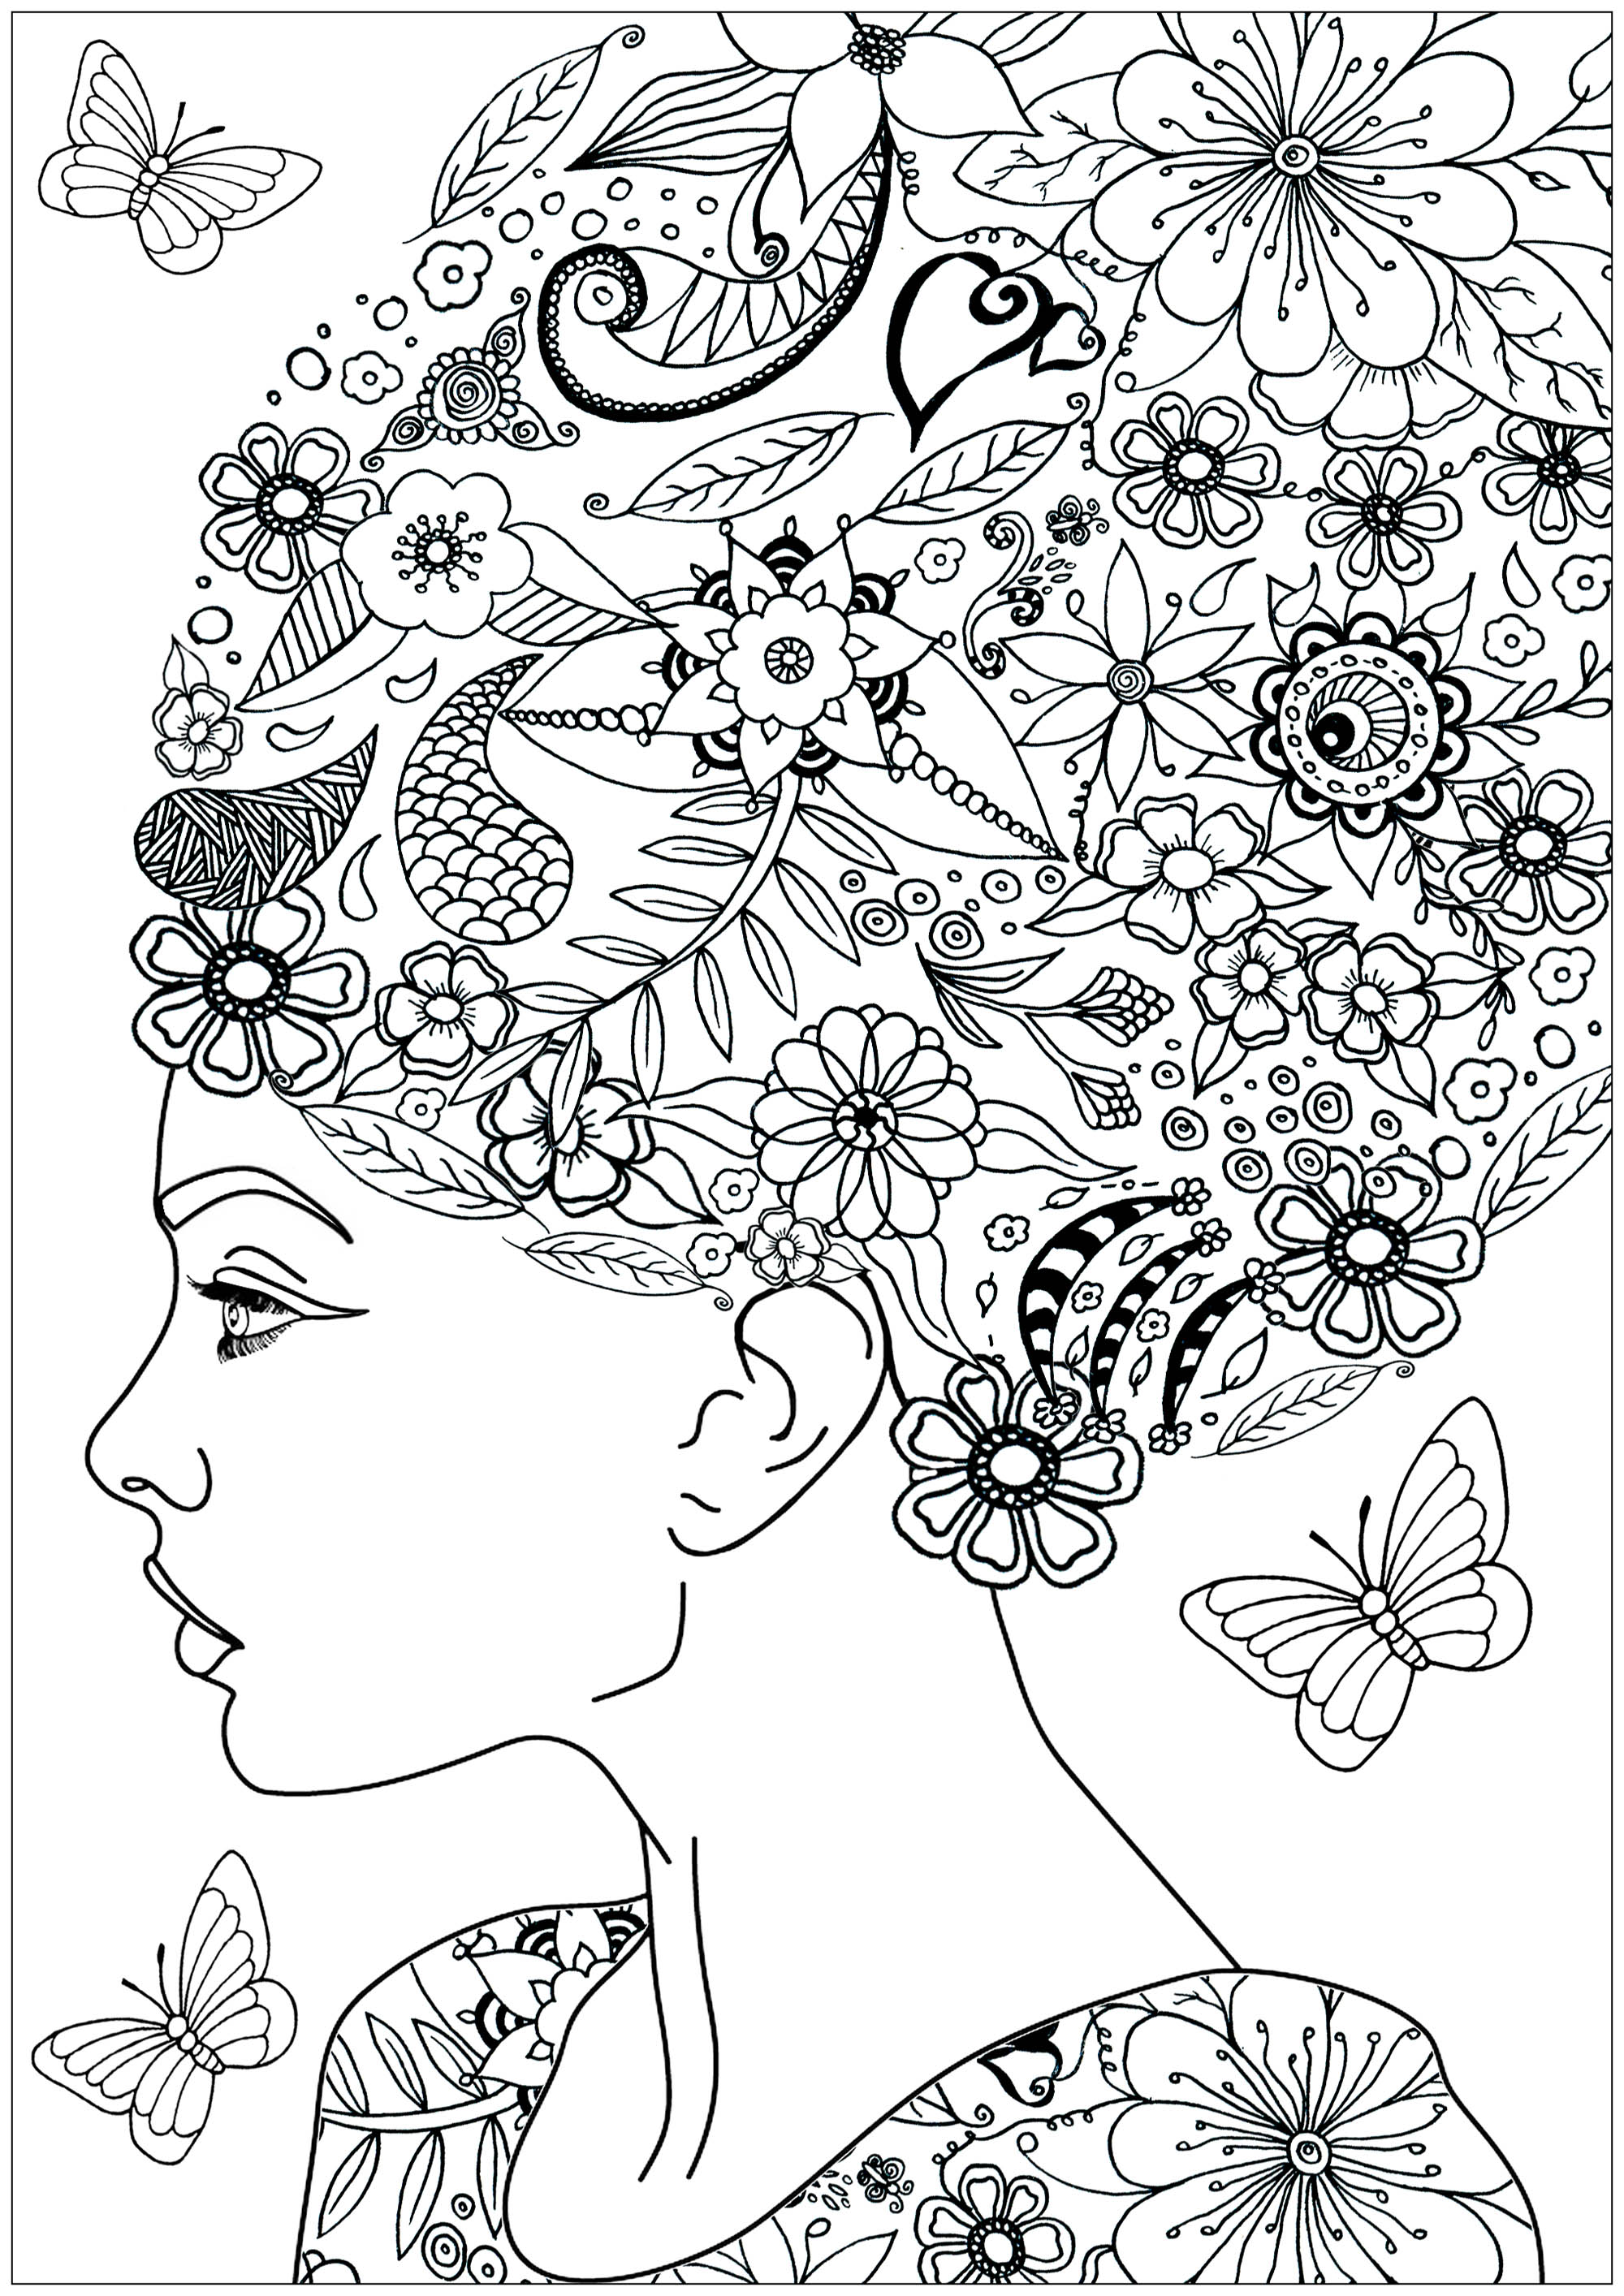 Colorate i bellissimi fiori e le foglie tra i capelli di questa donna... e le farfalle dell'albero che le volano intorno, Artista : Art'Isabelle